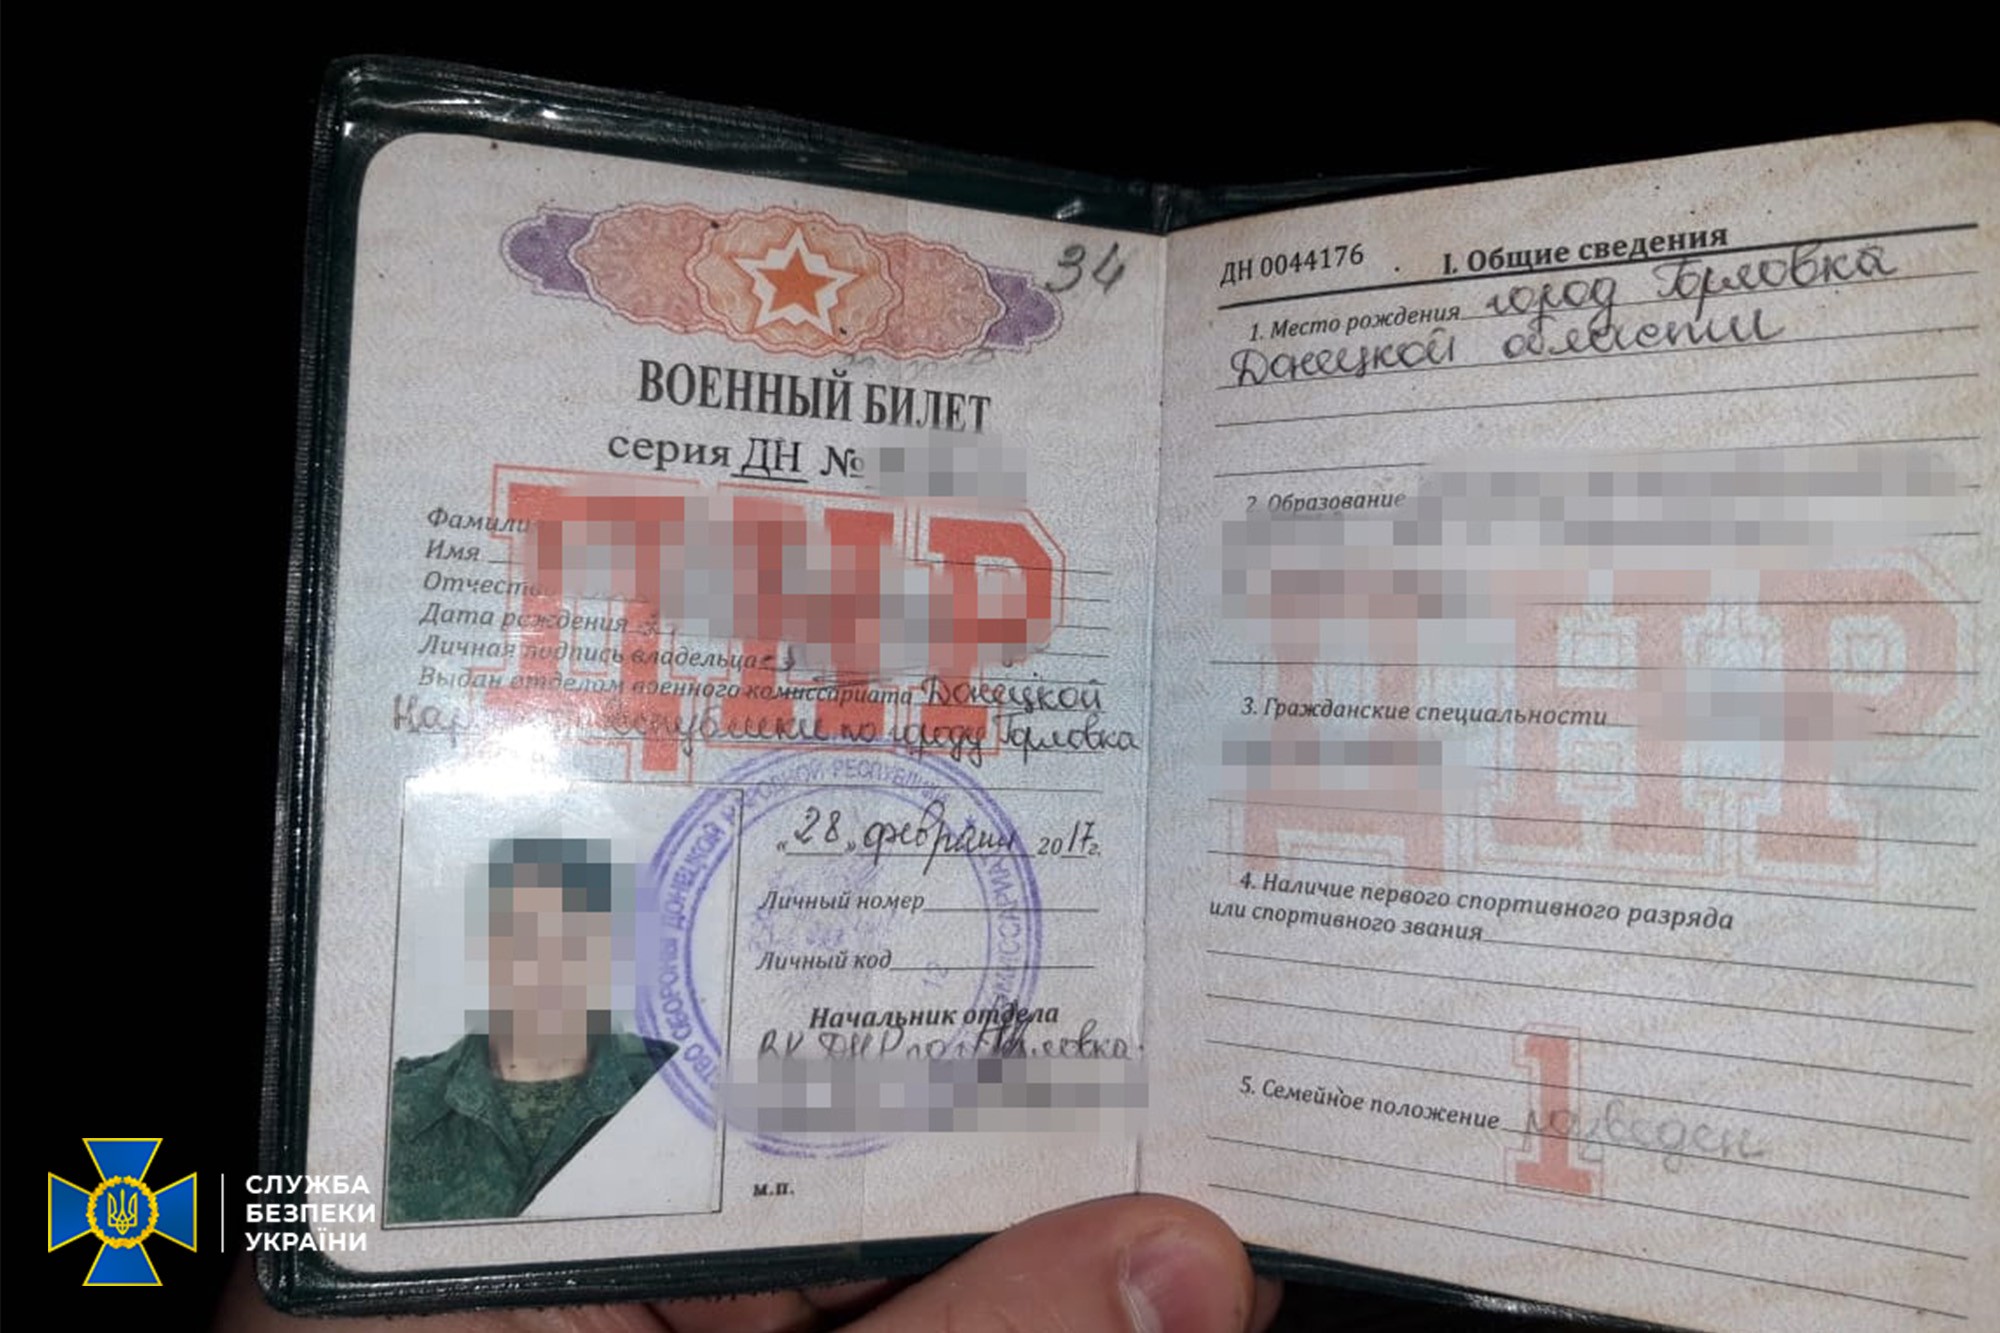 "Ветеран Новороссии" отсидит 10 лет. Пойманный СБУ террорист получил приговор 